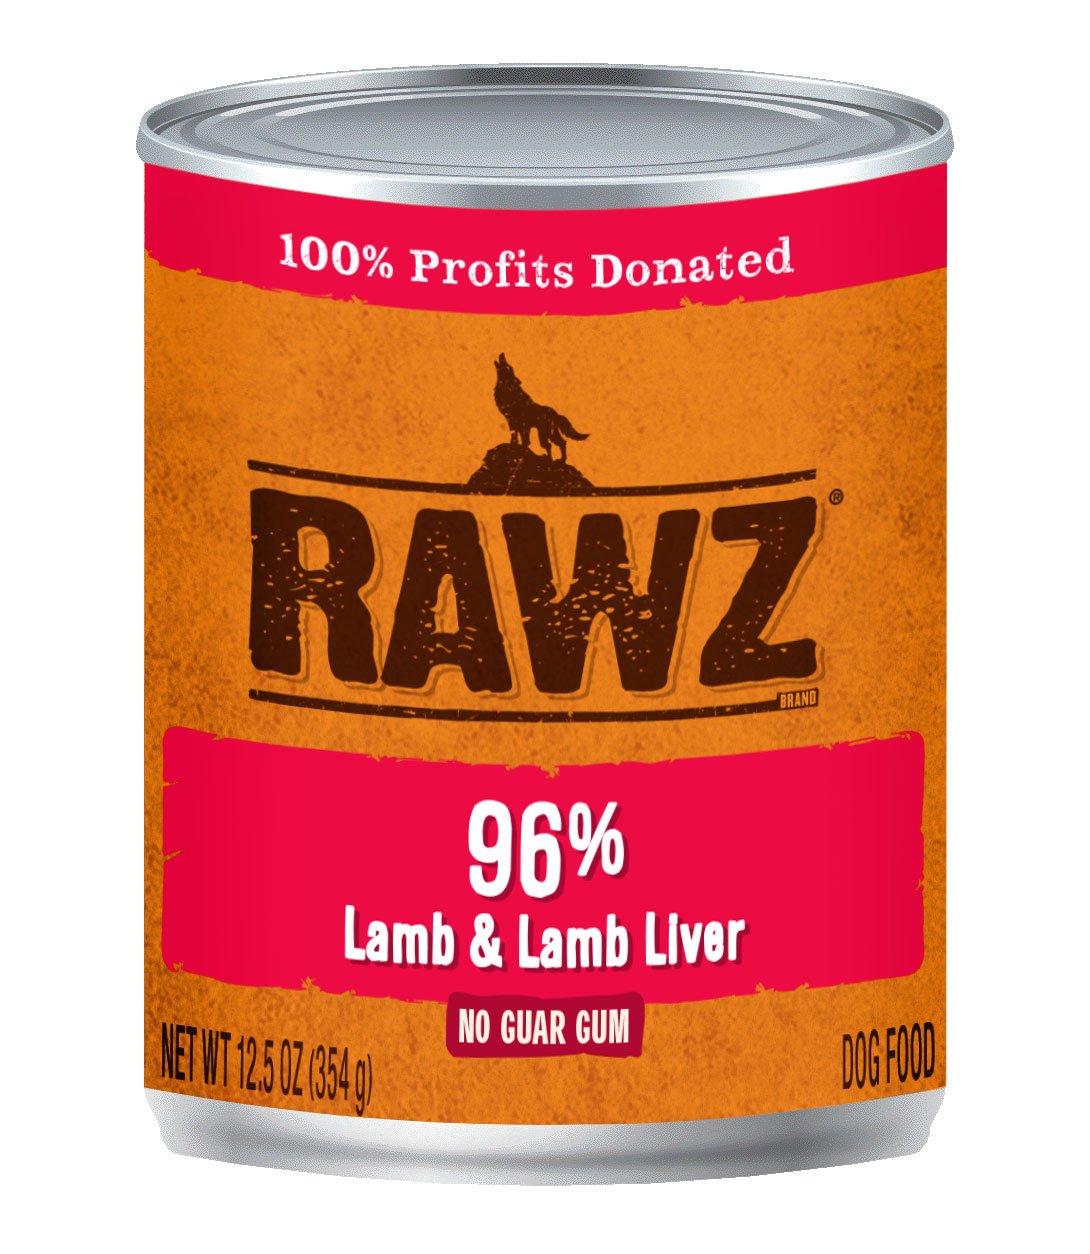 RAWZ 96% Lamb & Lamb Liver